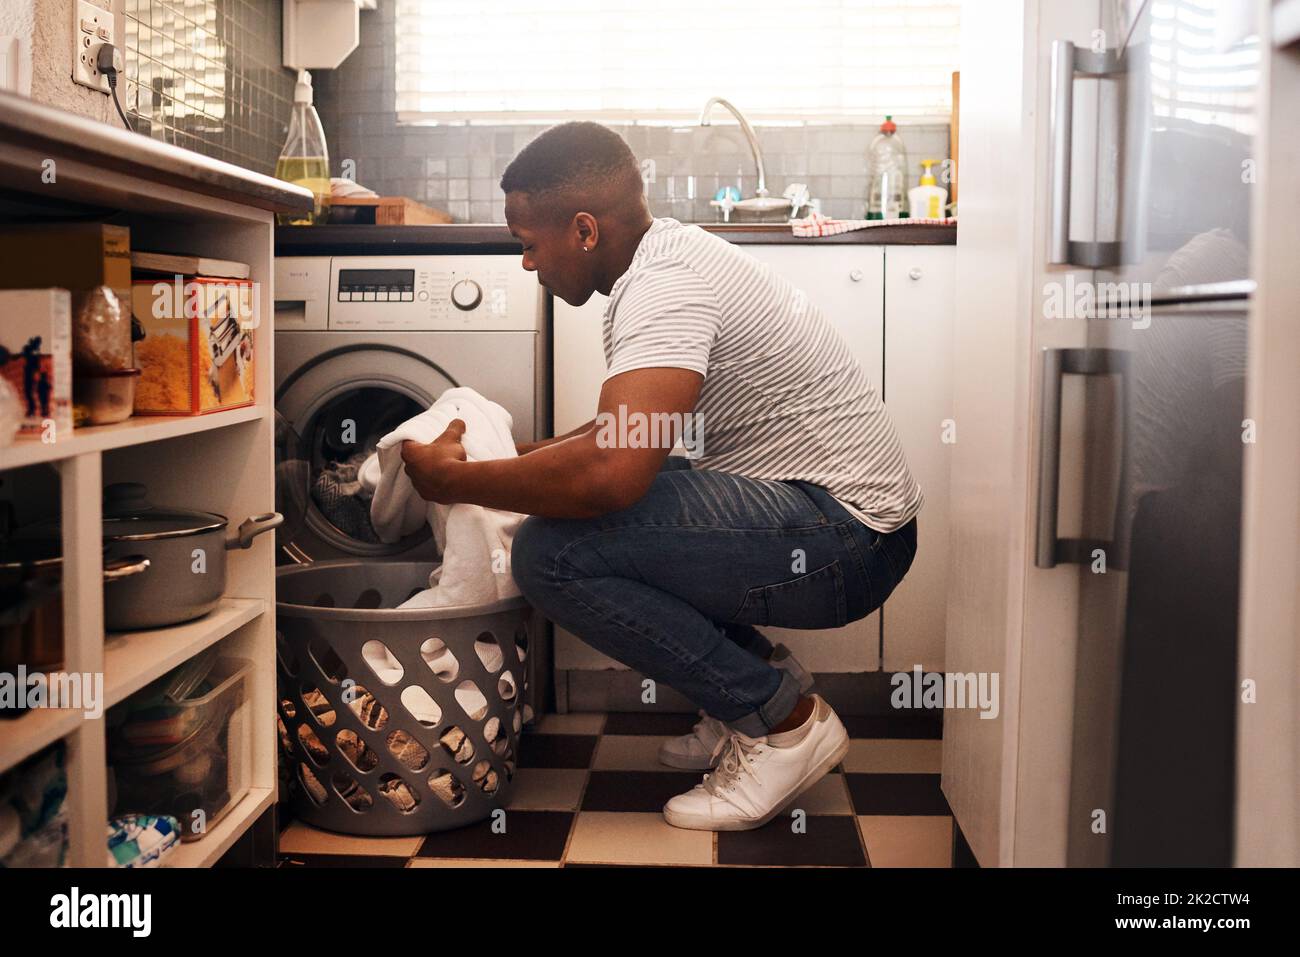 Ich mache am Wochenende immer Wäsche. Aufnahme eines Mannes, der die Wäsche zu Hause macht. Stockfoto